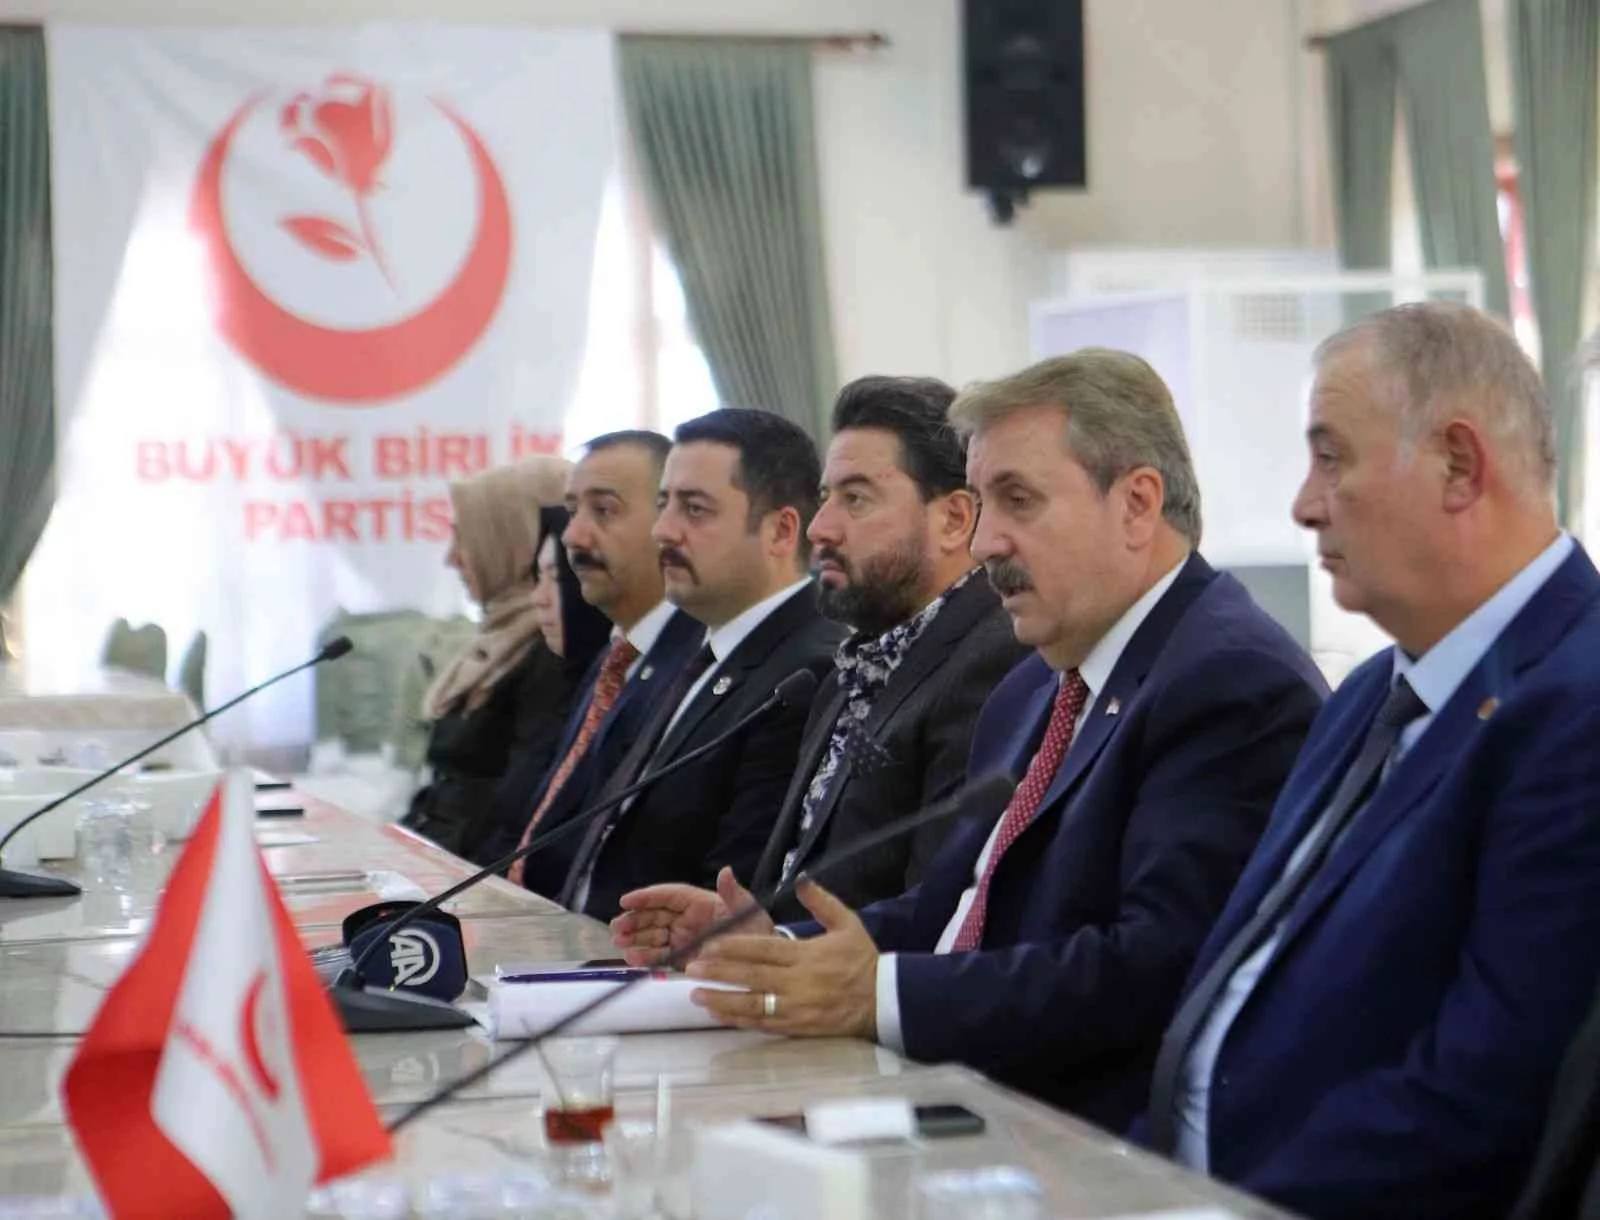 BBP Lideri Destici: “Türkiyenin ekonomik anlamda zorda kalmasının sebebi de vatan hainleri ve onların destekçileridir”